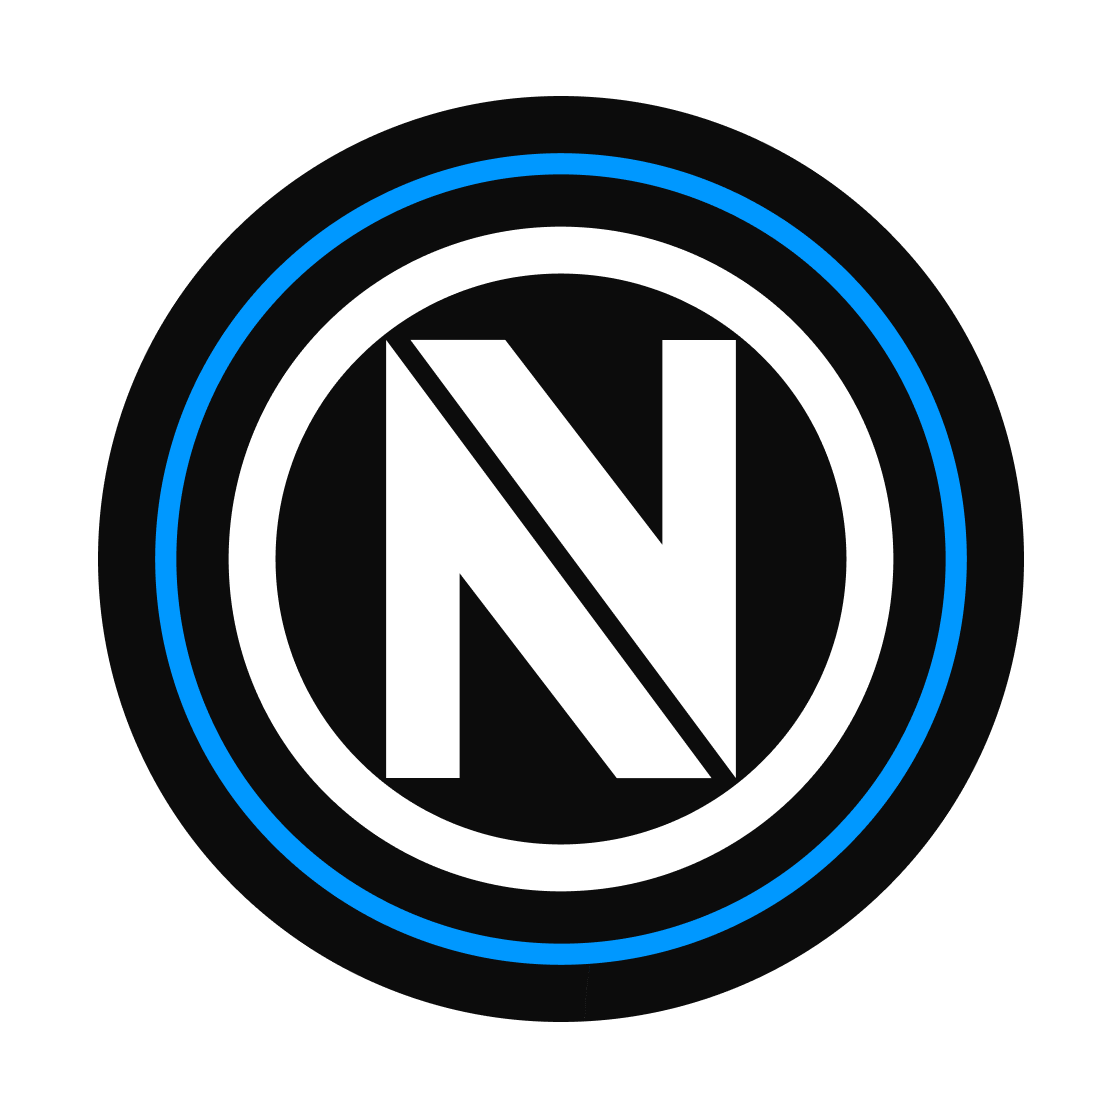 NS NPX Emblem